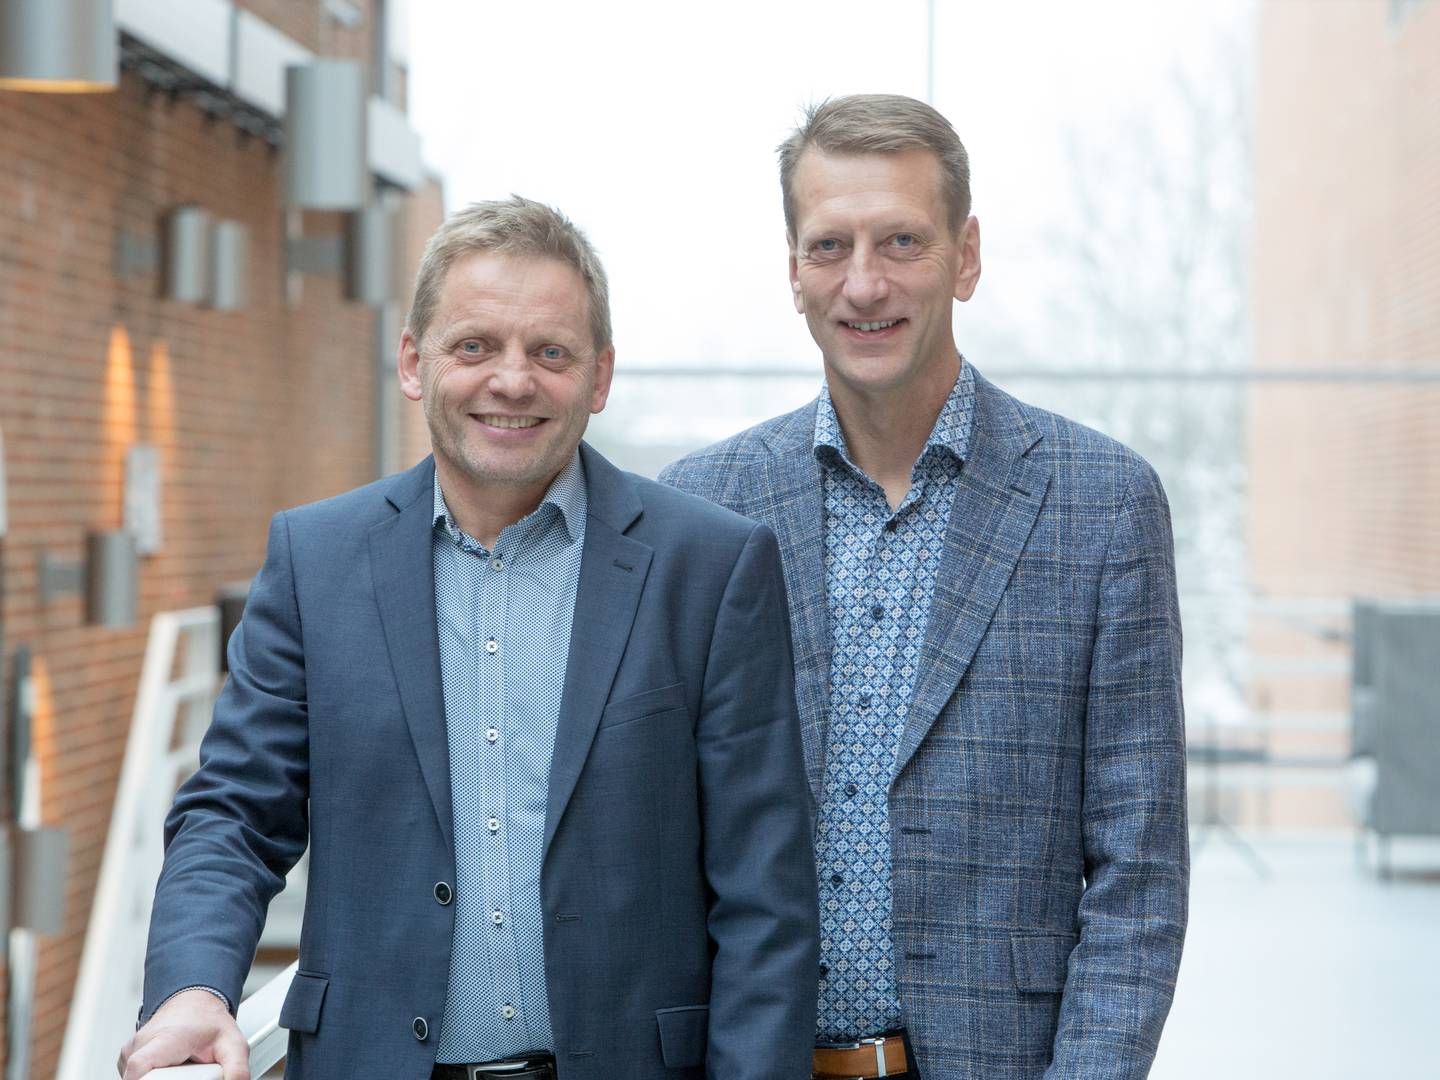 Formand Søren F. Overgaard (til venstre) og direktør Uffe Wiborg (til højre) | Foto: Dangris / PR